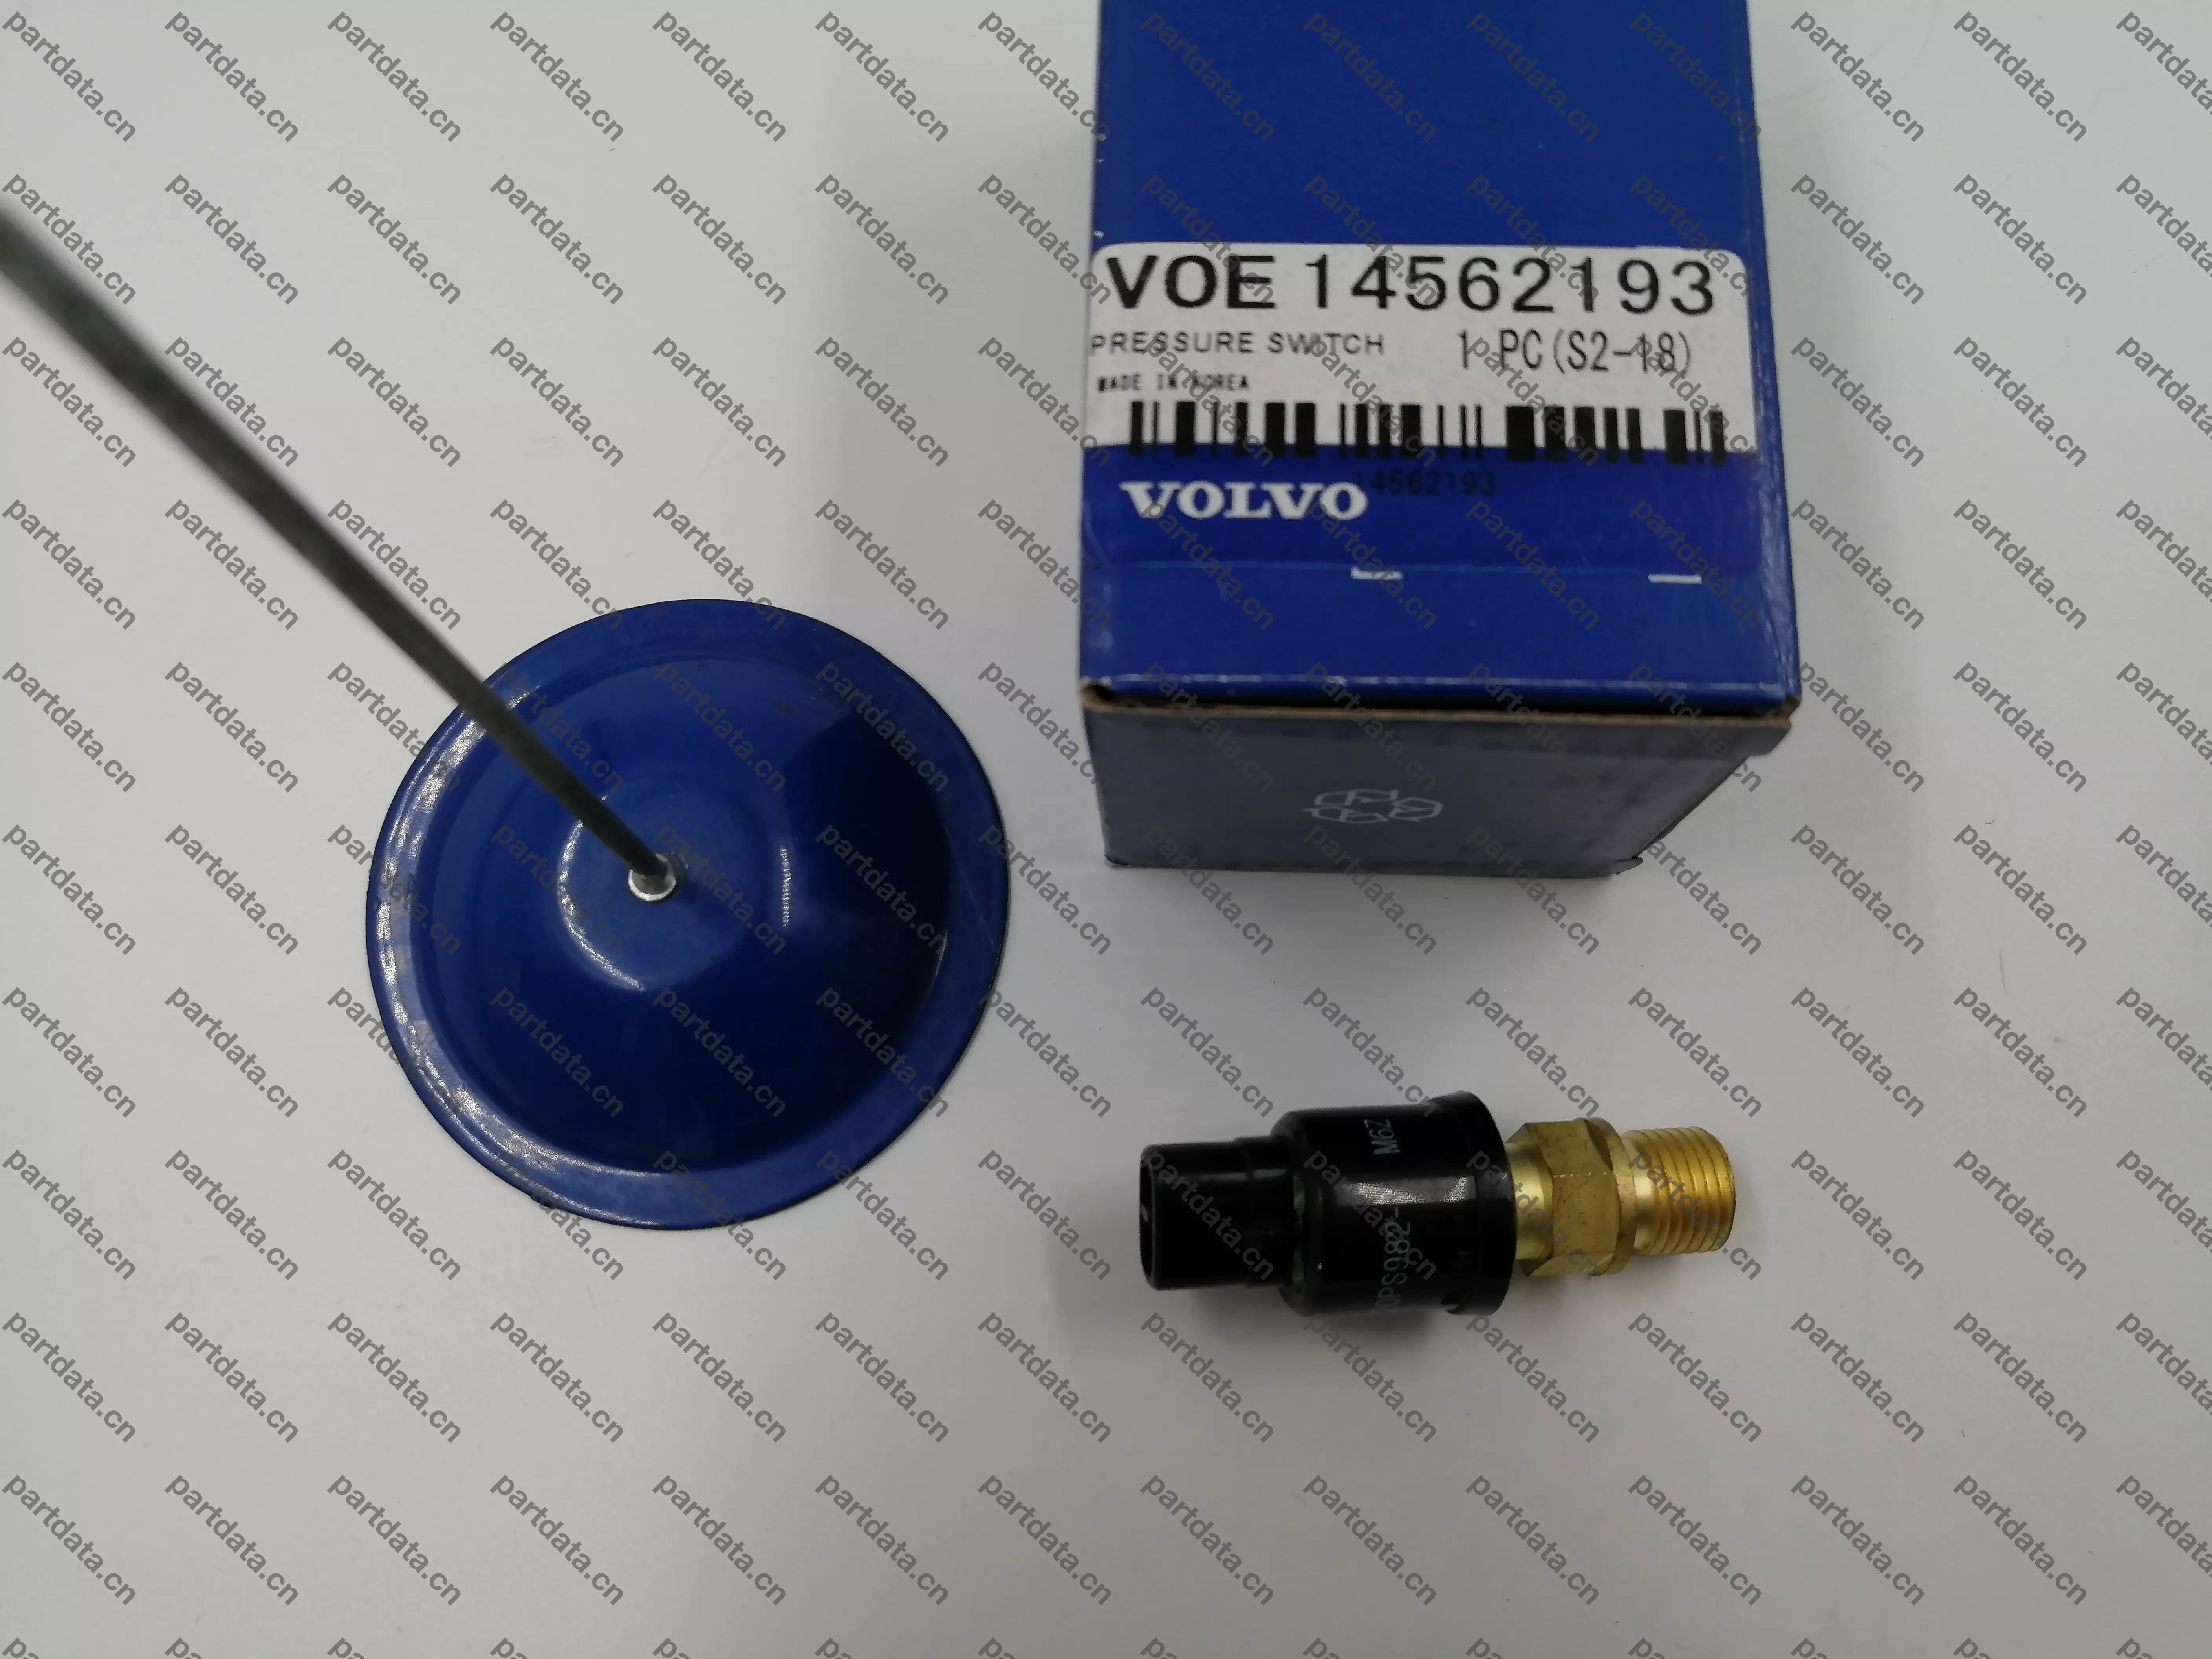 沃尔沃挖掘机压力传感器20PS982-1，14562193